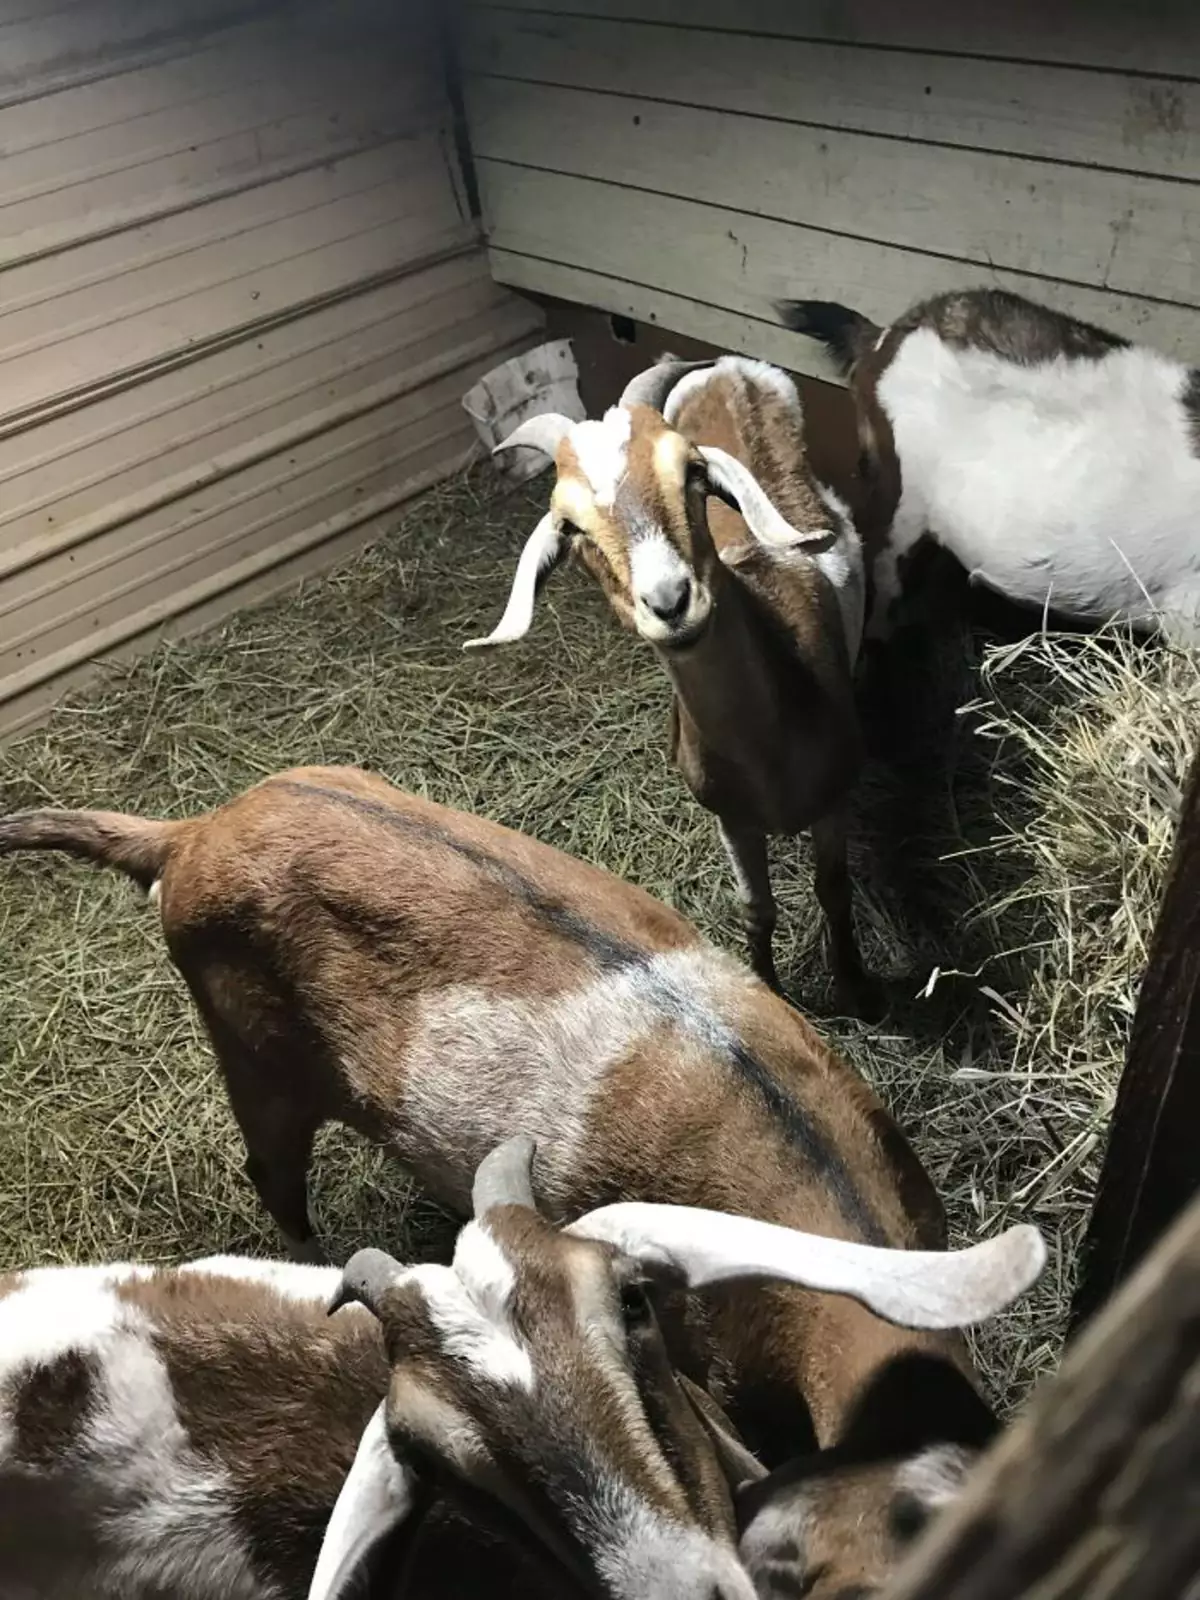 Некоммерческая организация Shepherd’s Rest Goat and Sheep Rescue обеспечивает убежище для коз и овец, подвергшихся жестокому обращению.